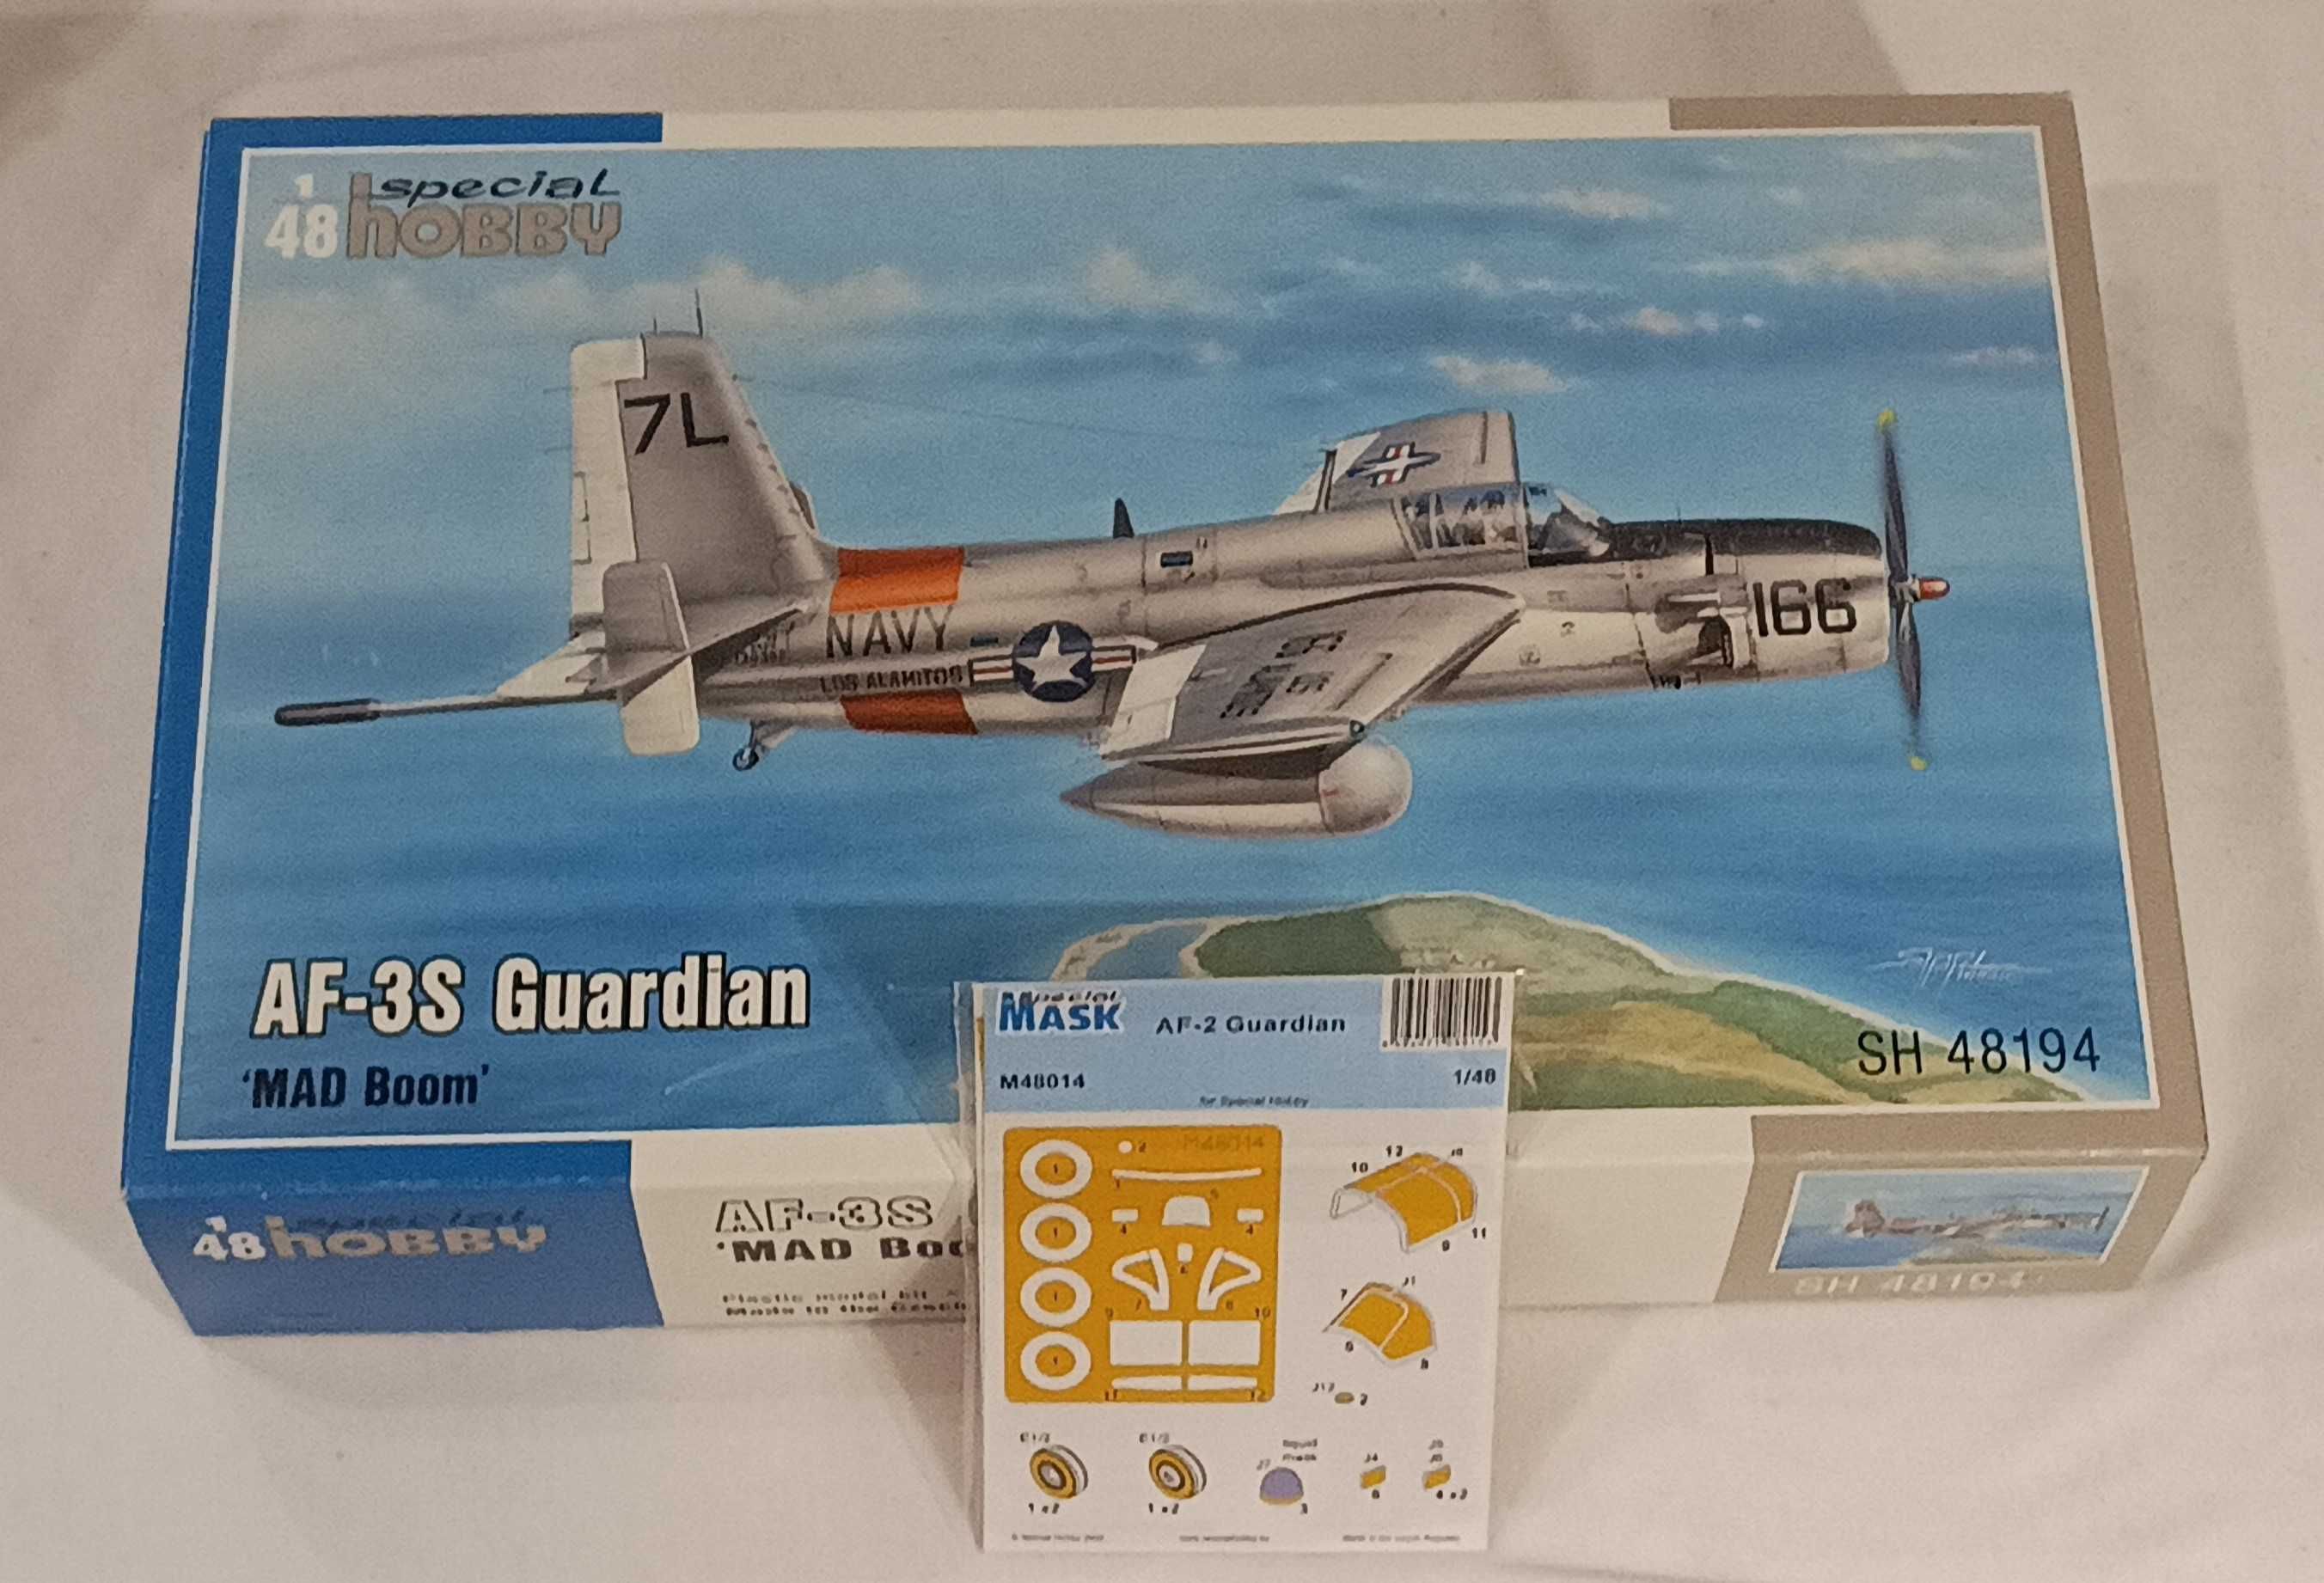 Grumman AF-3 s Guardian "MAD Boom", Special Hobby 1:48 + maski. model